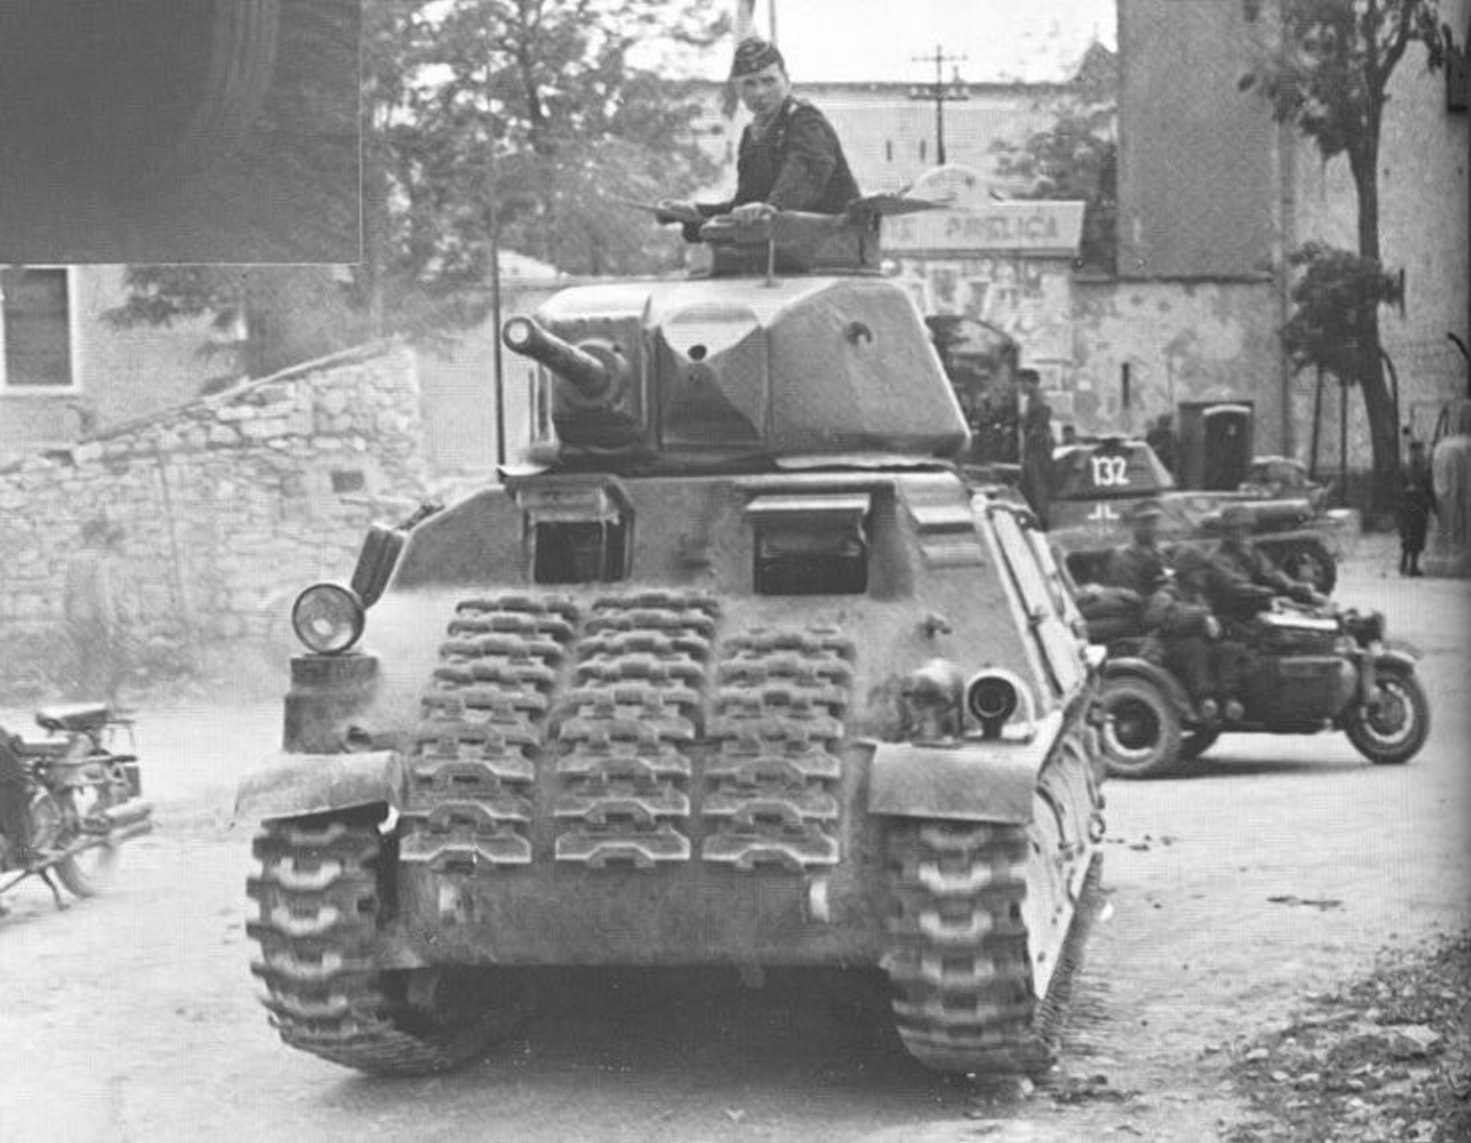 Немецкий танк был единственным подбитым в крепости